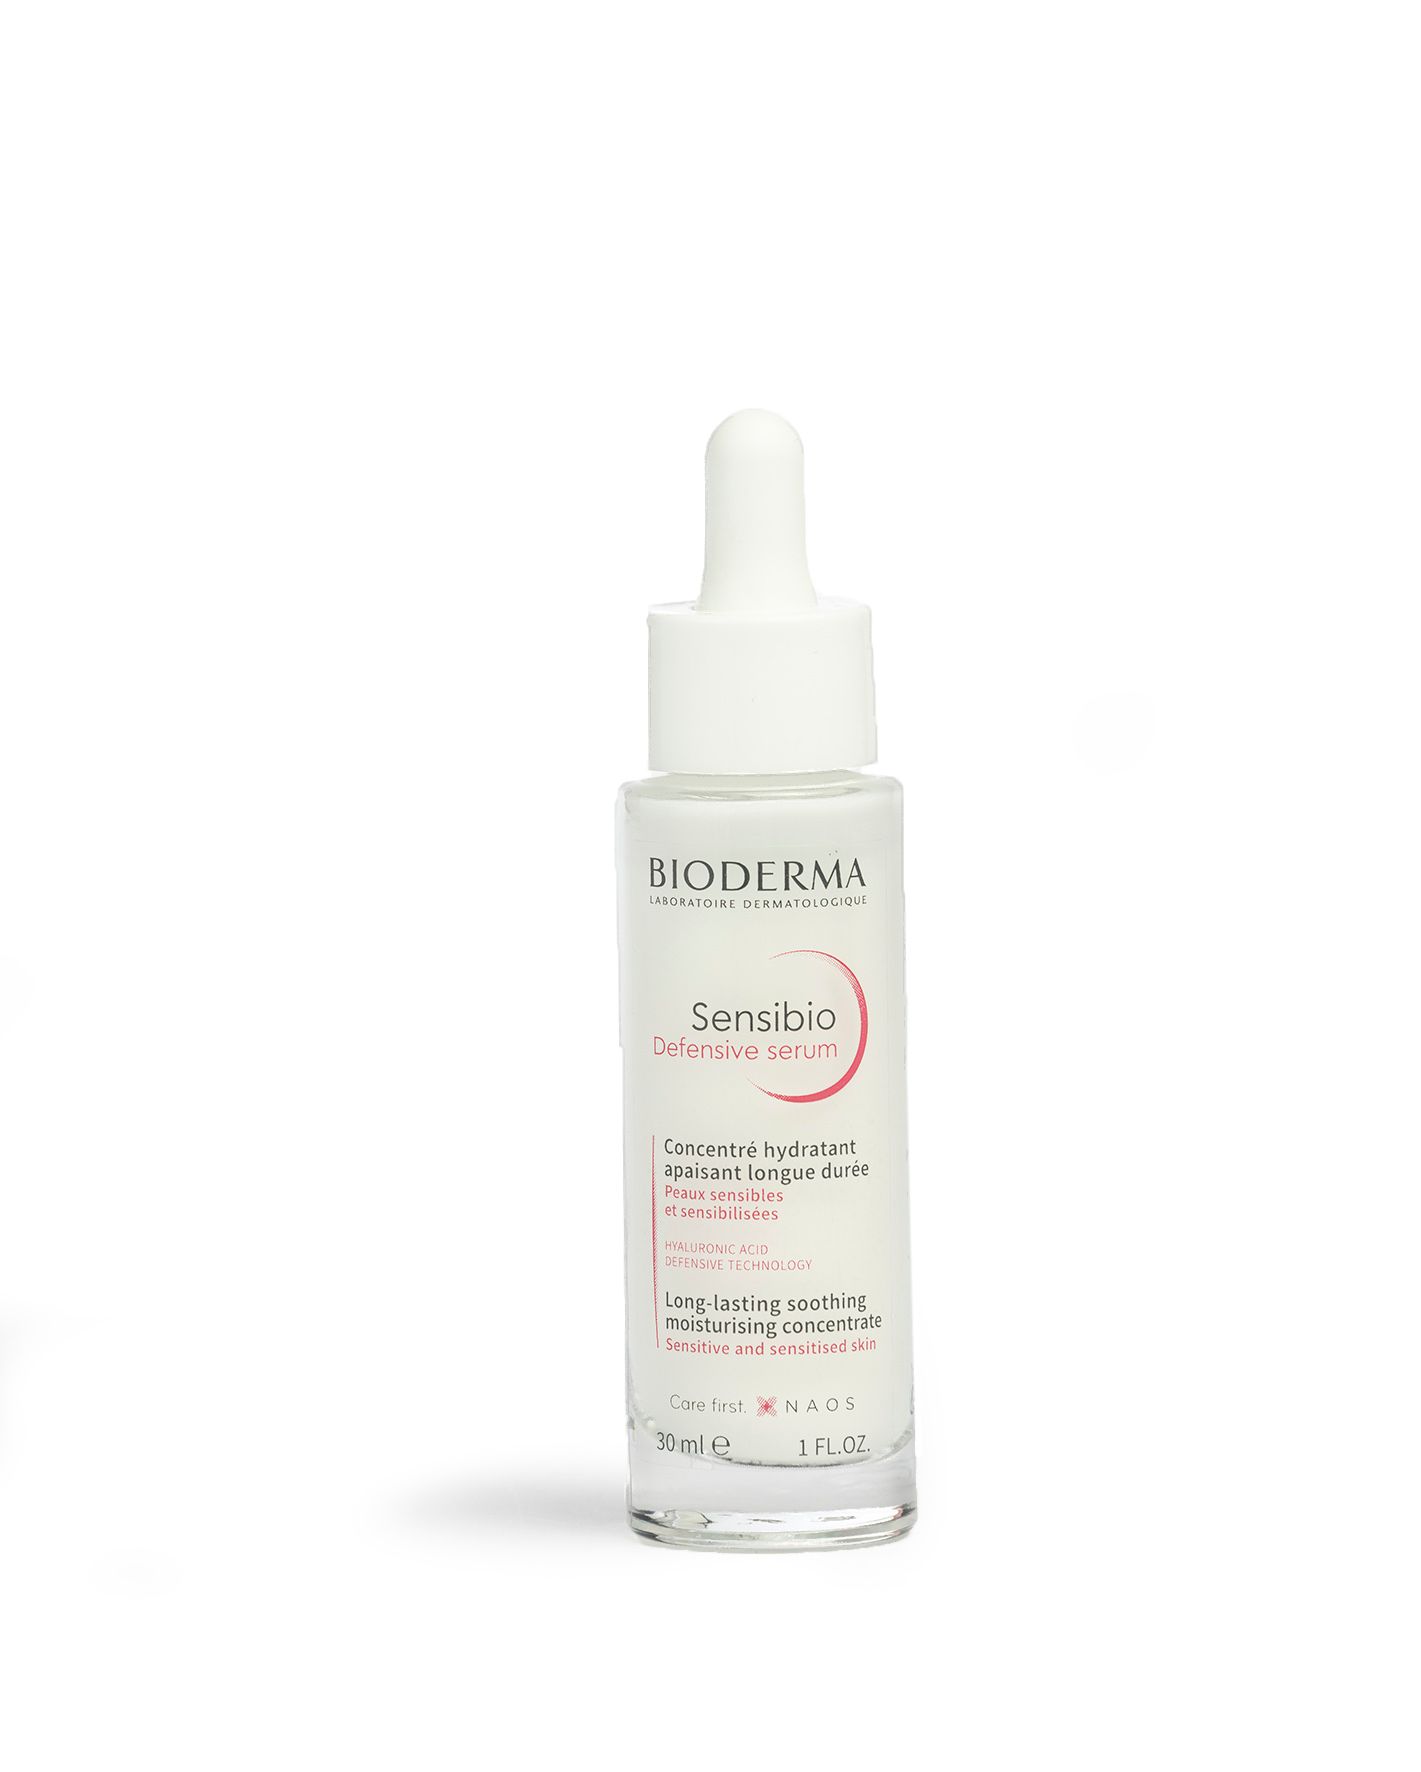 Punoitusta ja ihoärsytystä vähentävä Bioderma Defensive -seerumi vahvistaa herkkää ihoa. 30 ml n. 30 €. © Tommi Tuomi